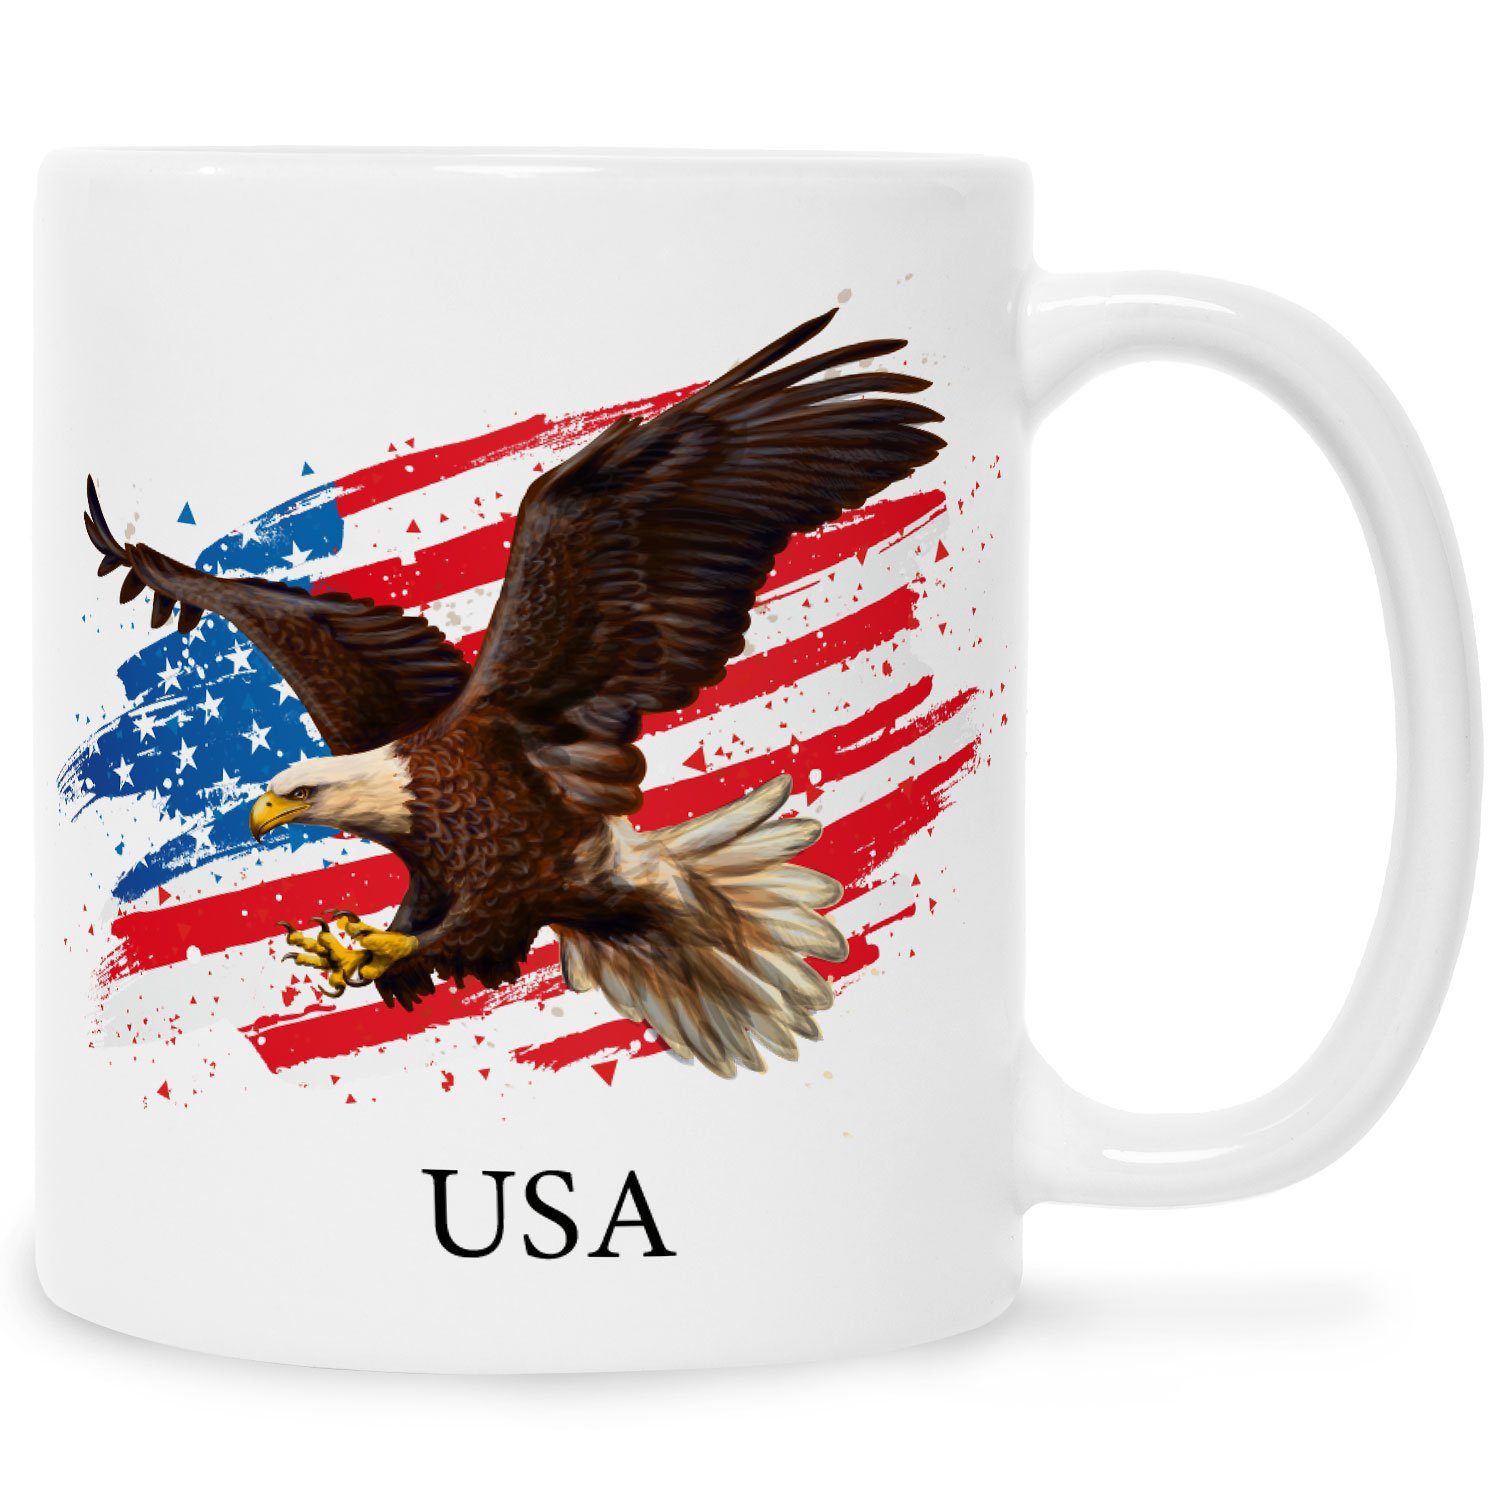 GRAVURZEILE Tasse Bedruckt mit Motiv - USA - Für Amerika Fans, Keramik, Ländertasse mit Flagge & Adler - Geschenk Souvenir mit American Flag Weiß